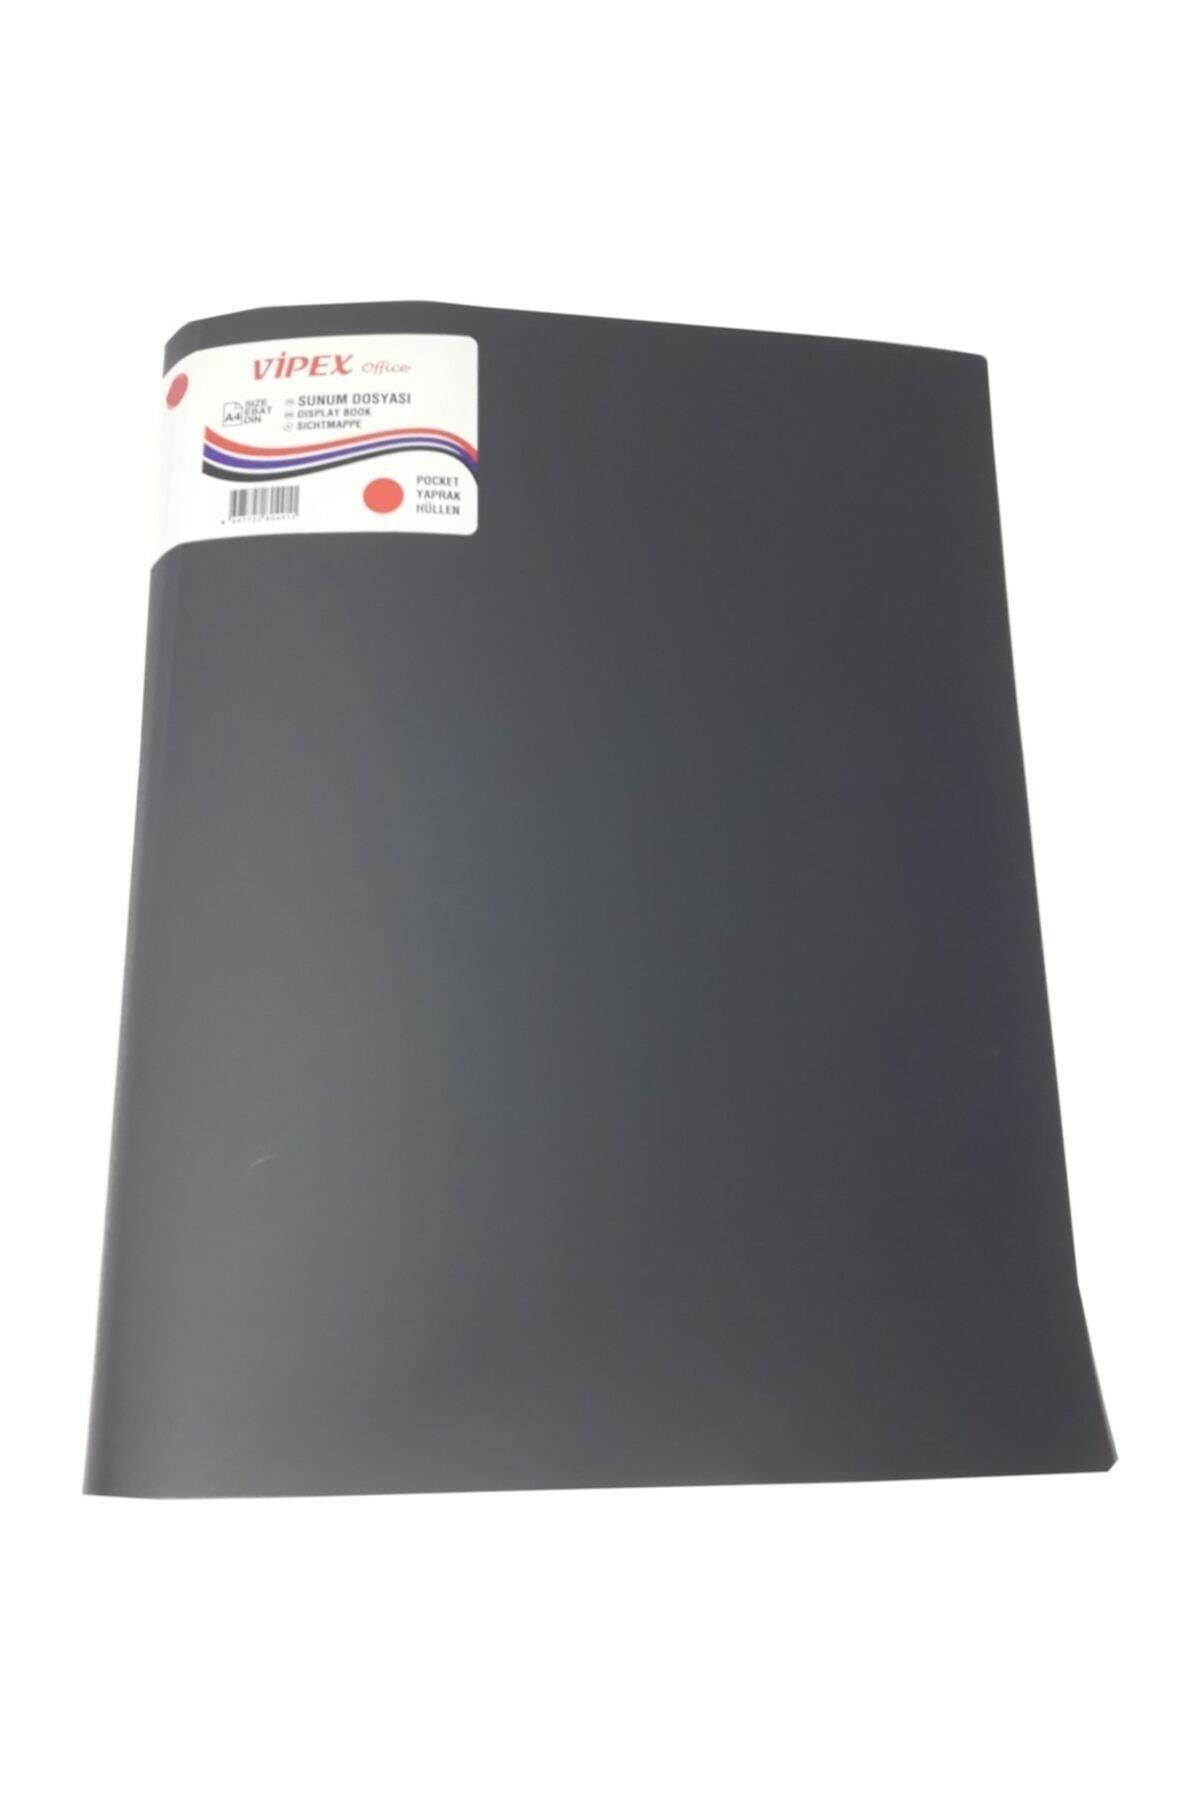 VİPEX 40'lı A4 Plastik Kapak Siyah Kırmızı Mavi Sunum Dosyası